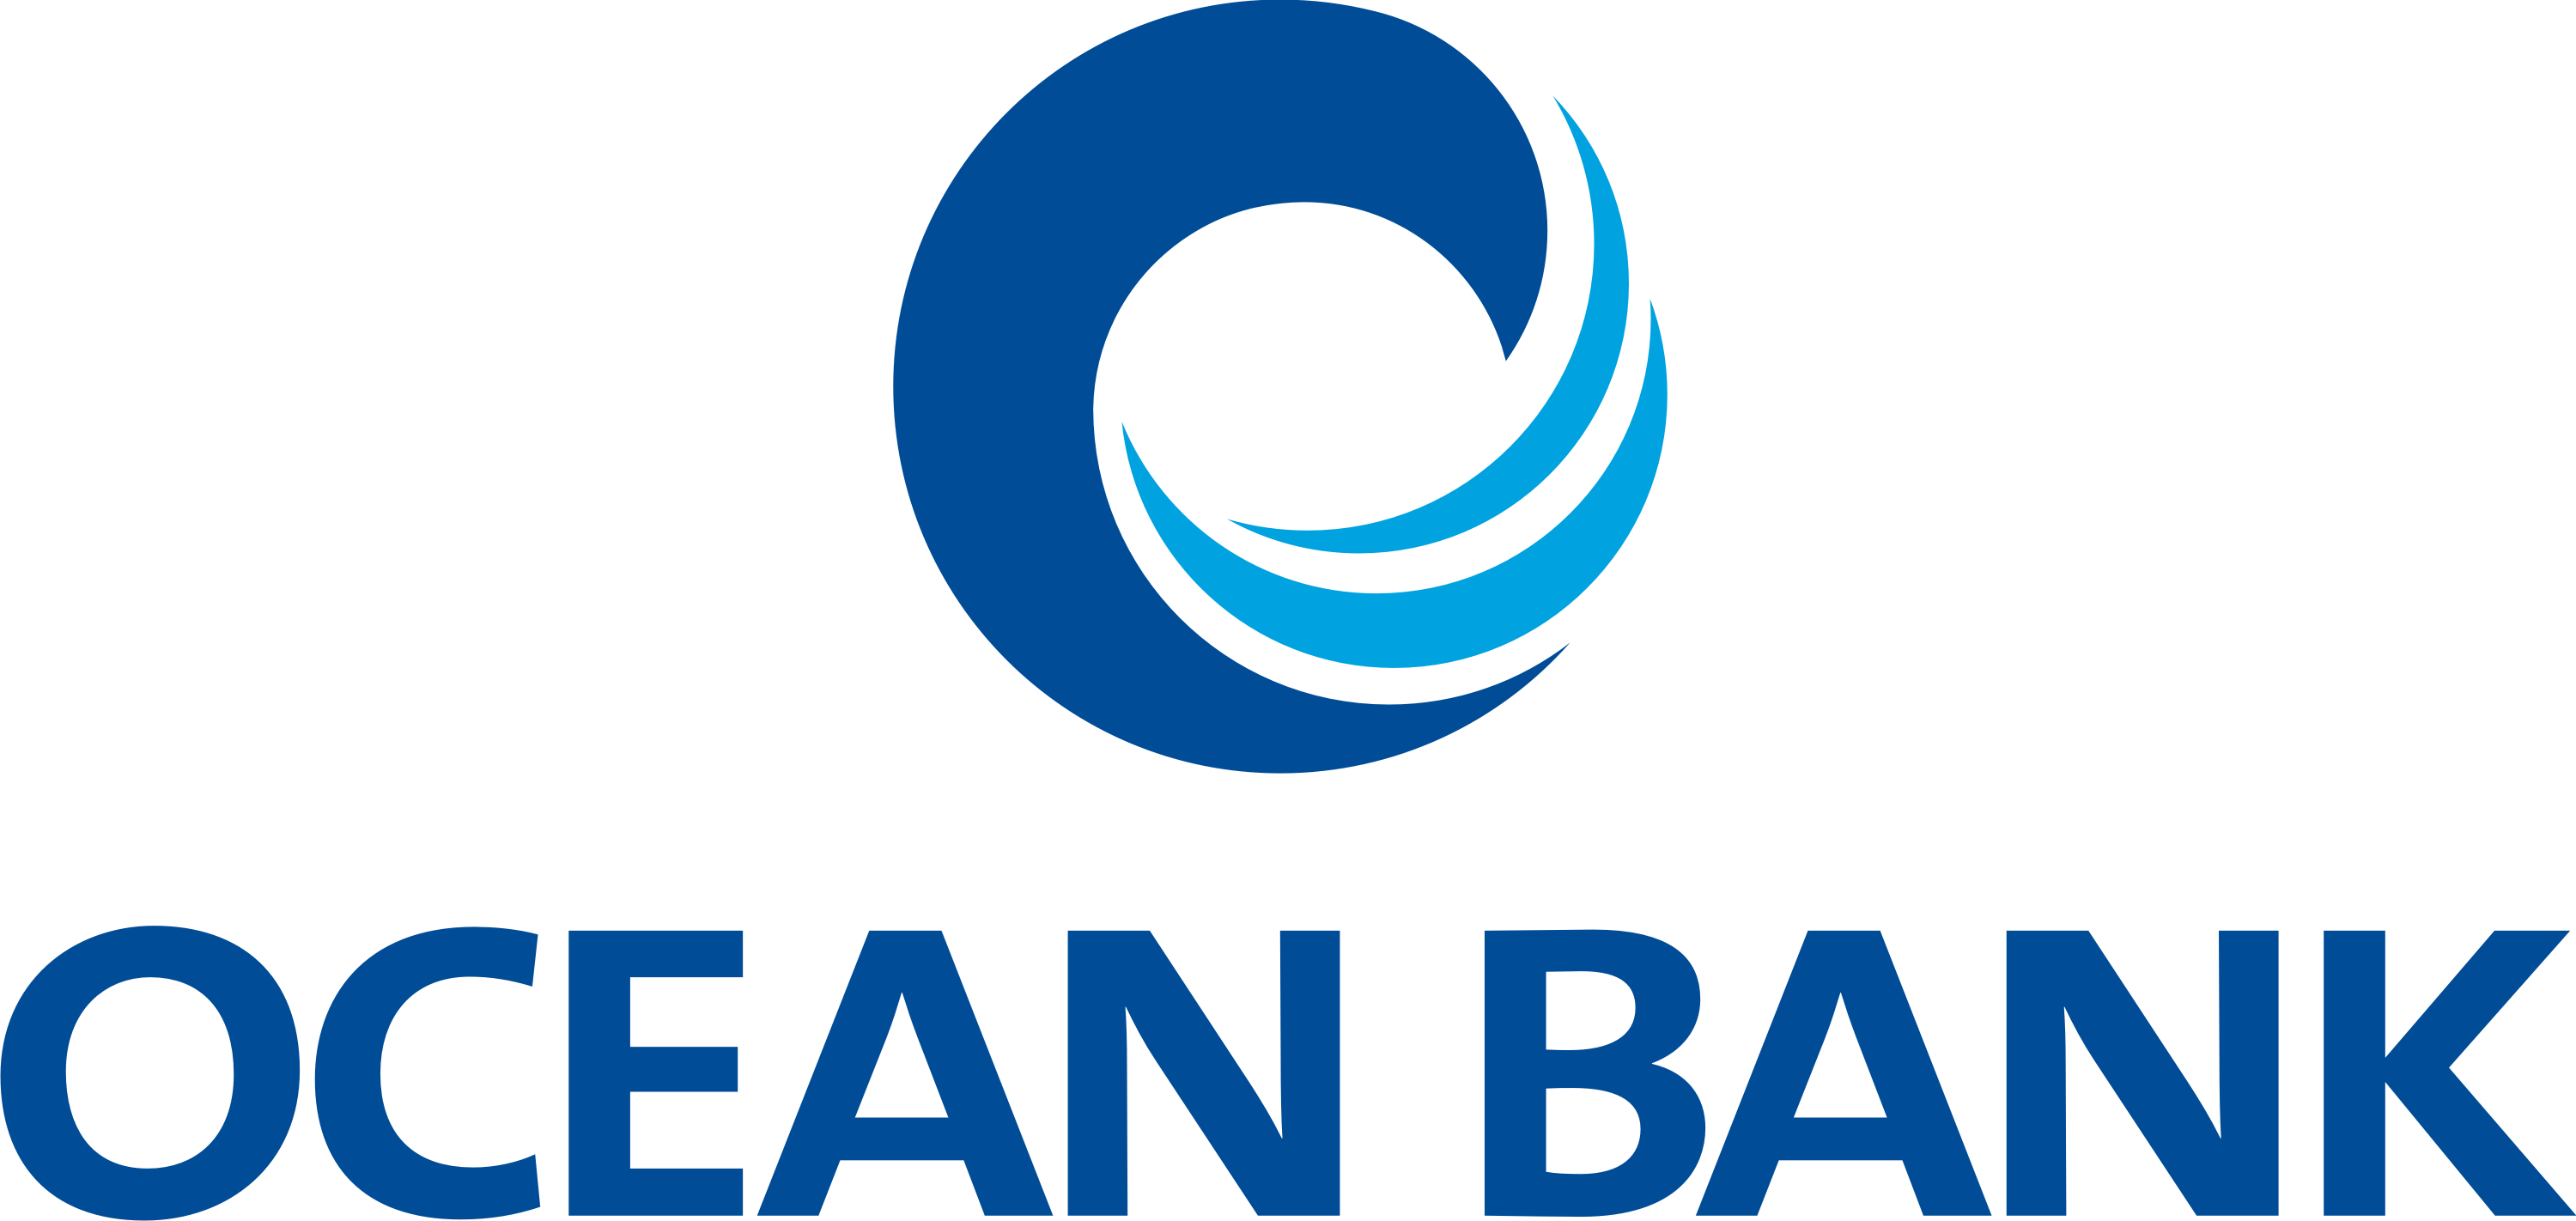 OCEAN BANK REPORTS I